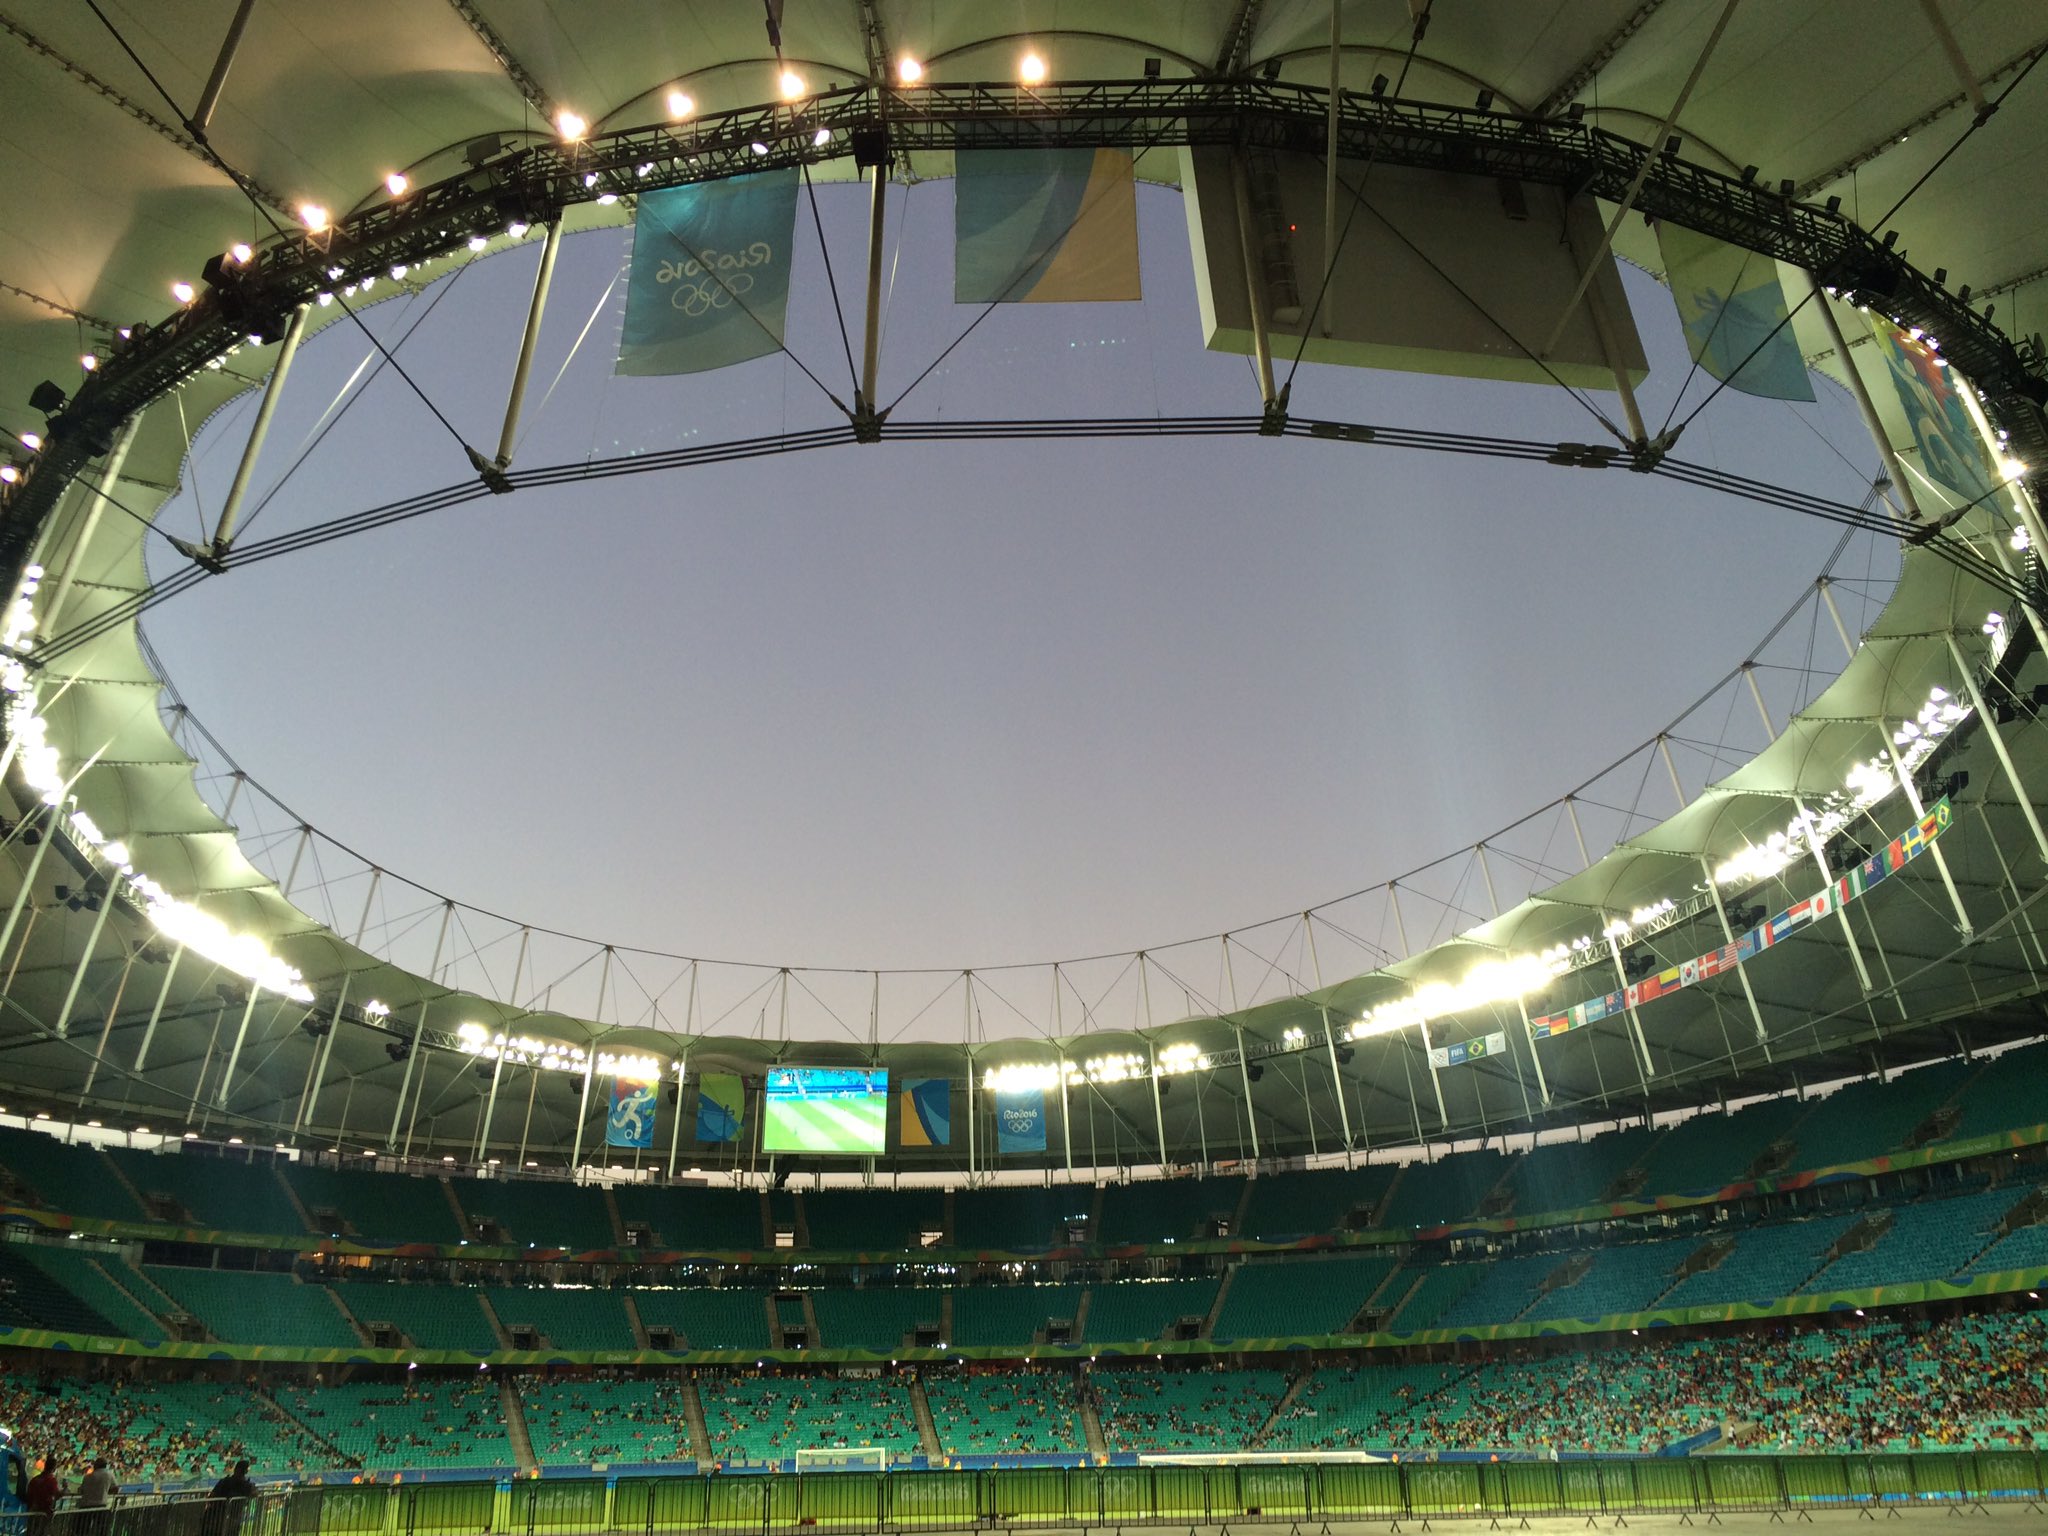 Le stade de Salvador (image Twitter Fabien Lévêque)